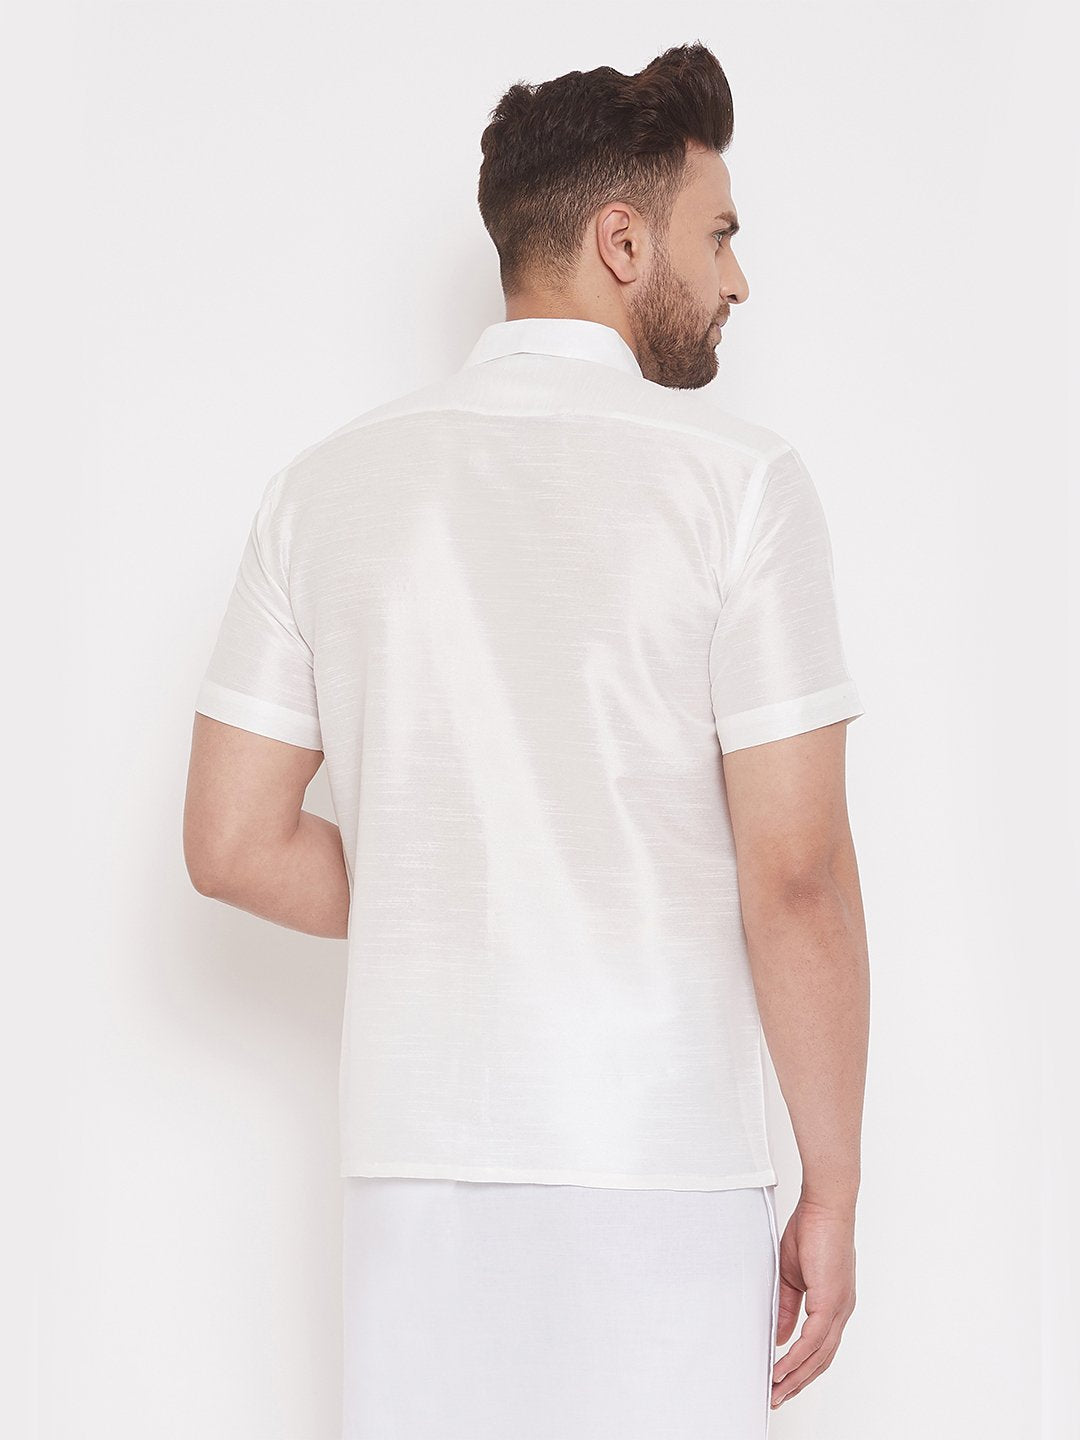 Men's White Cotton Silk Blend Ethnic Shirt - Vastramay